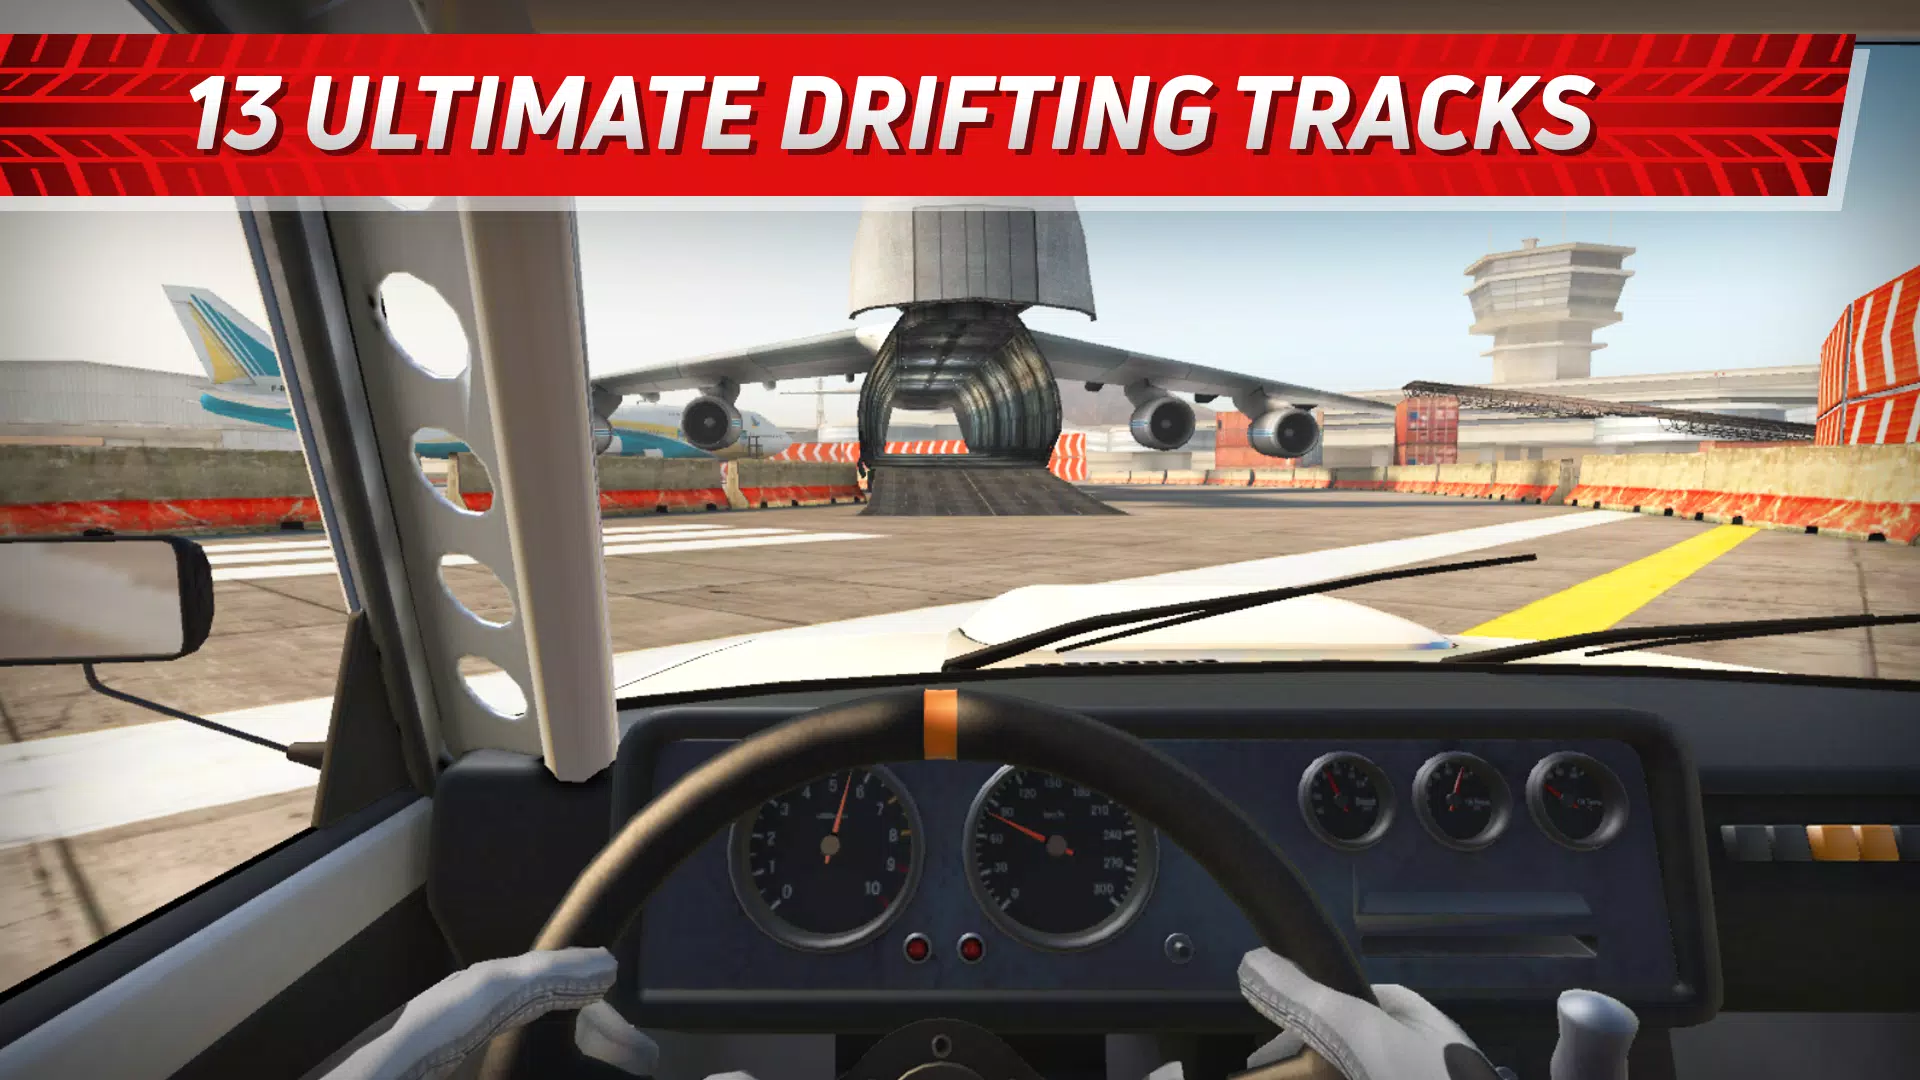 Hashiriya Drifter - Car Drift Racing Simulator for PS4